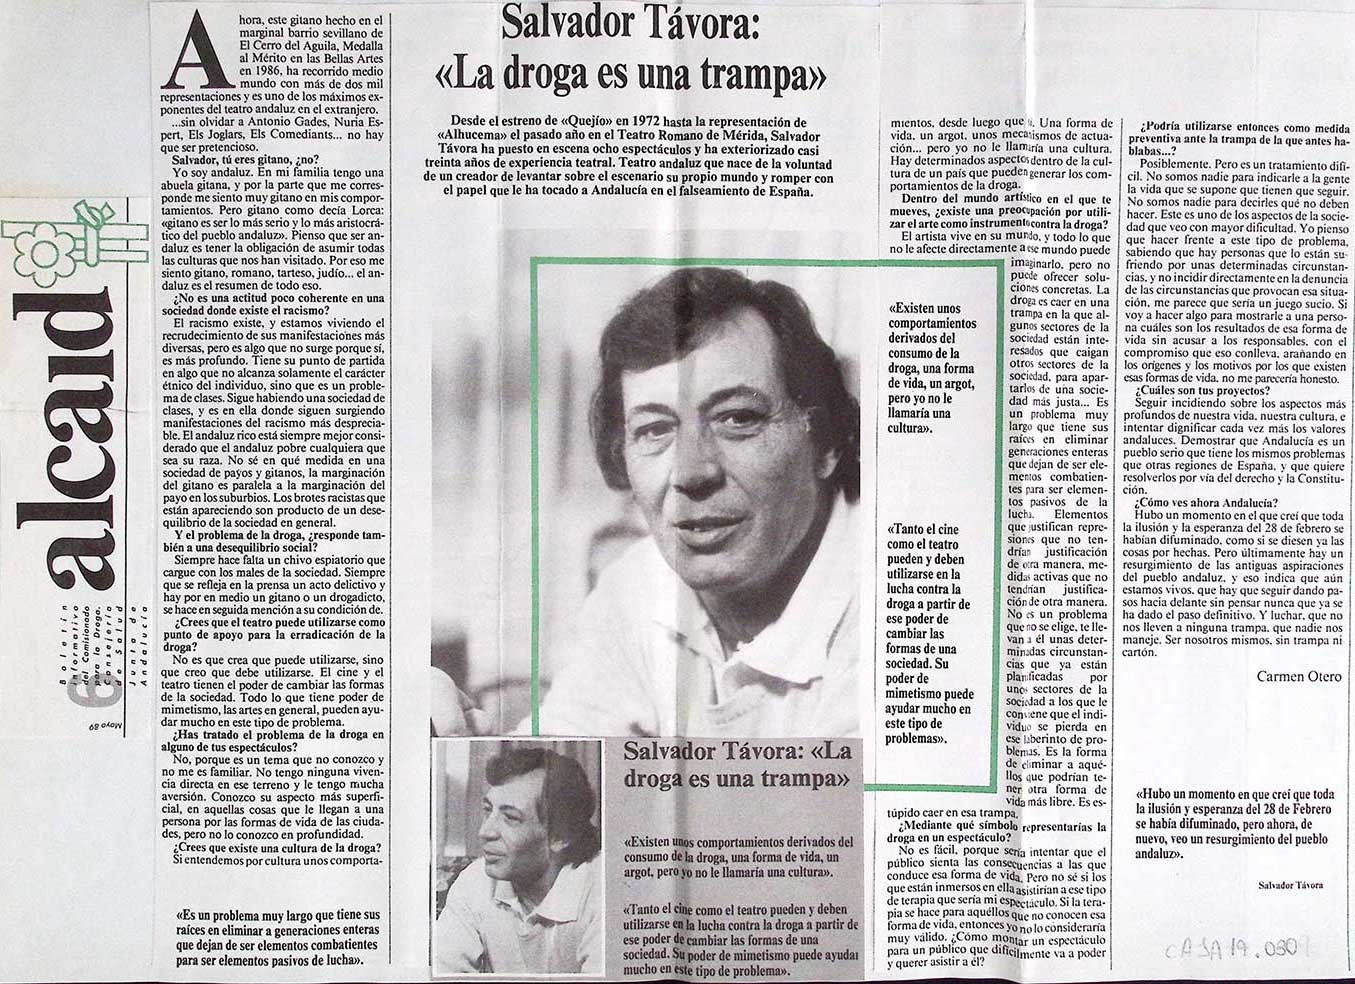 Salvador Távora: "La droga es una trampa"